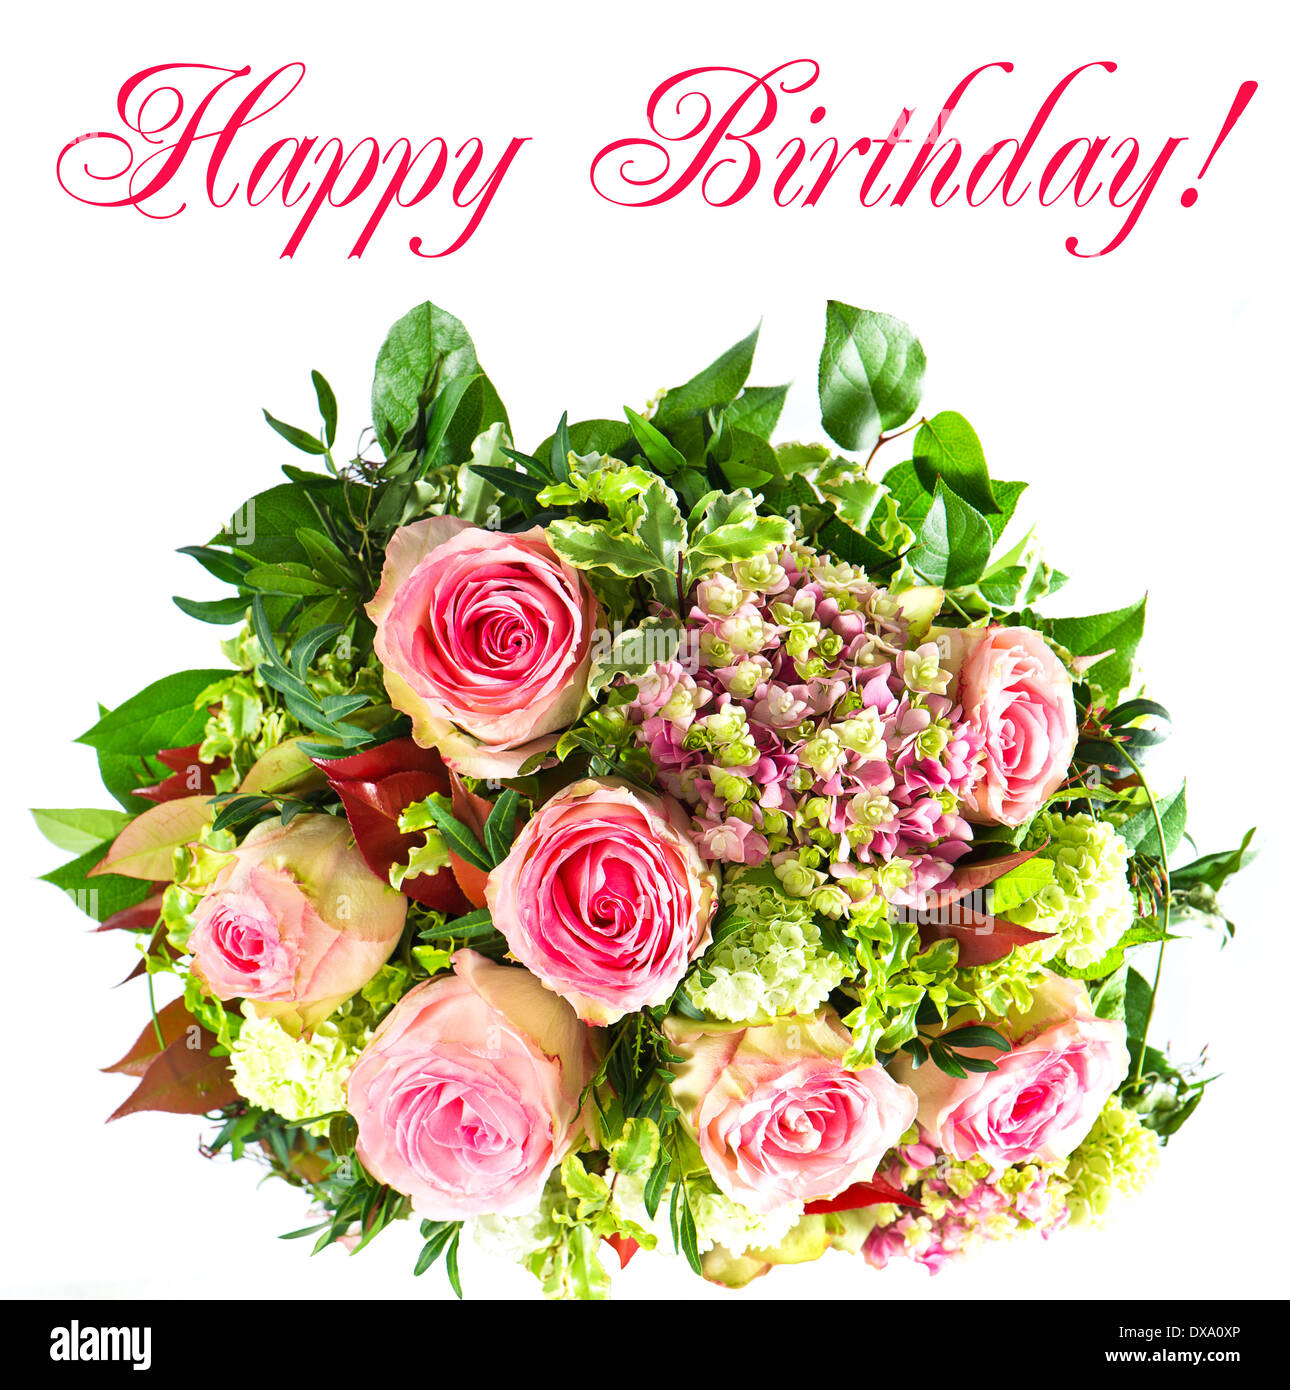 Happy birthday with flowers Banque d'images détourées - Alamy